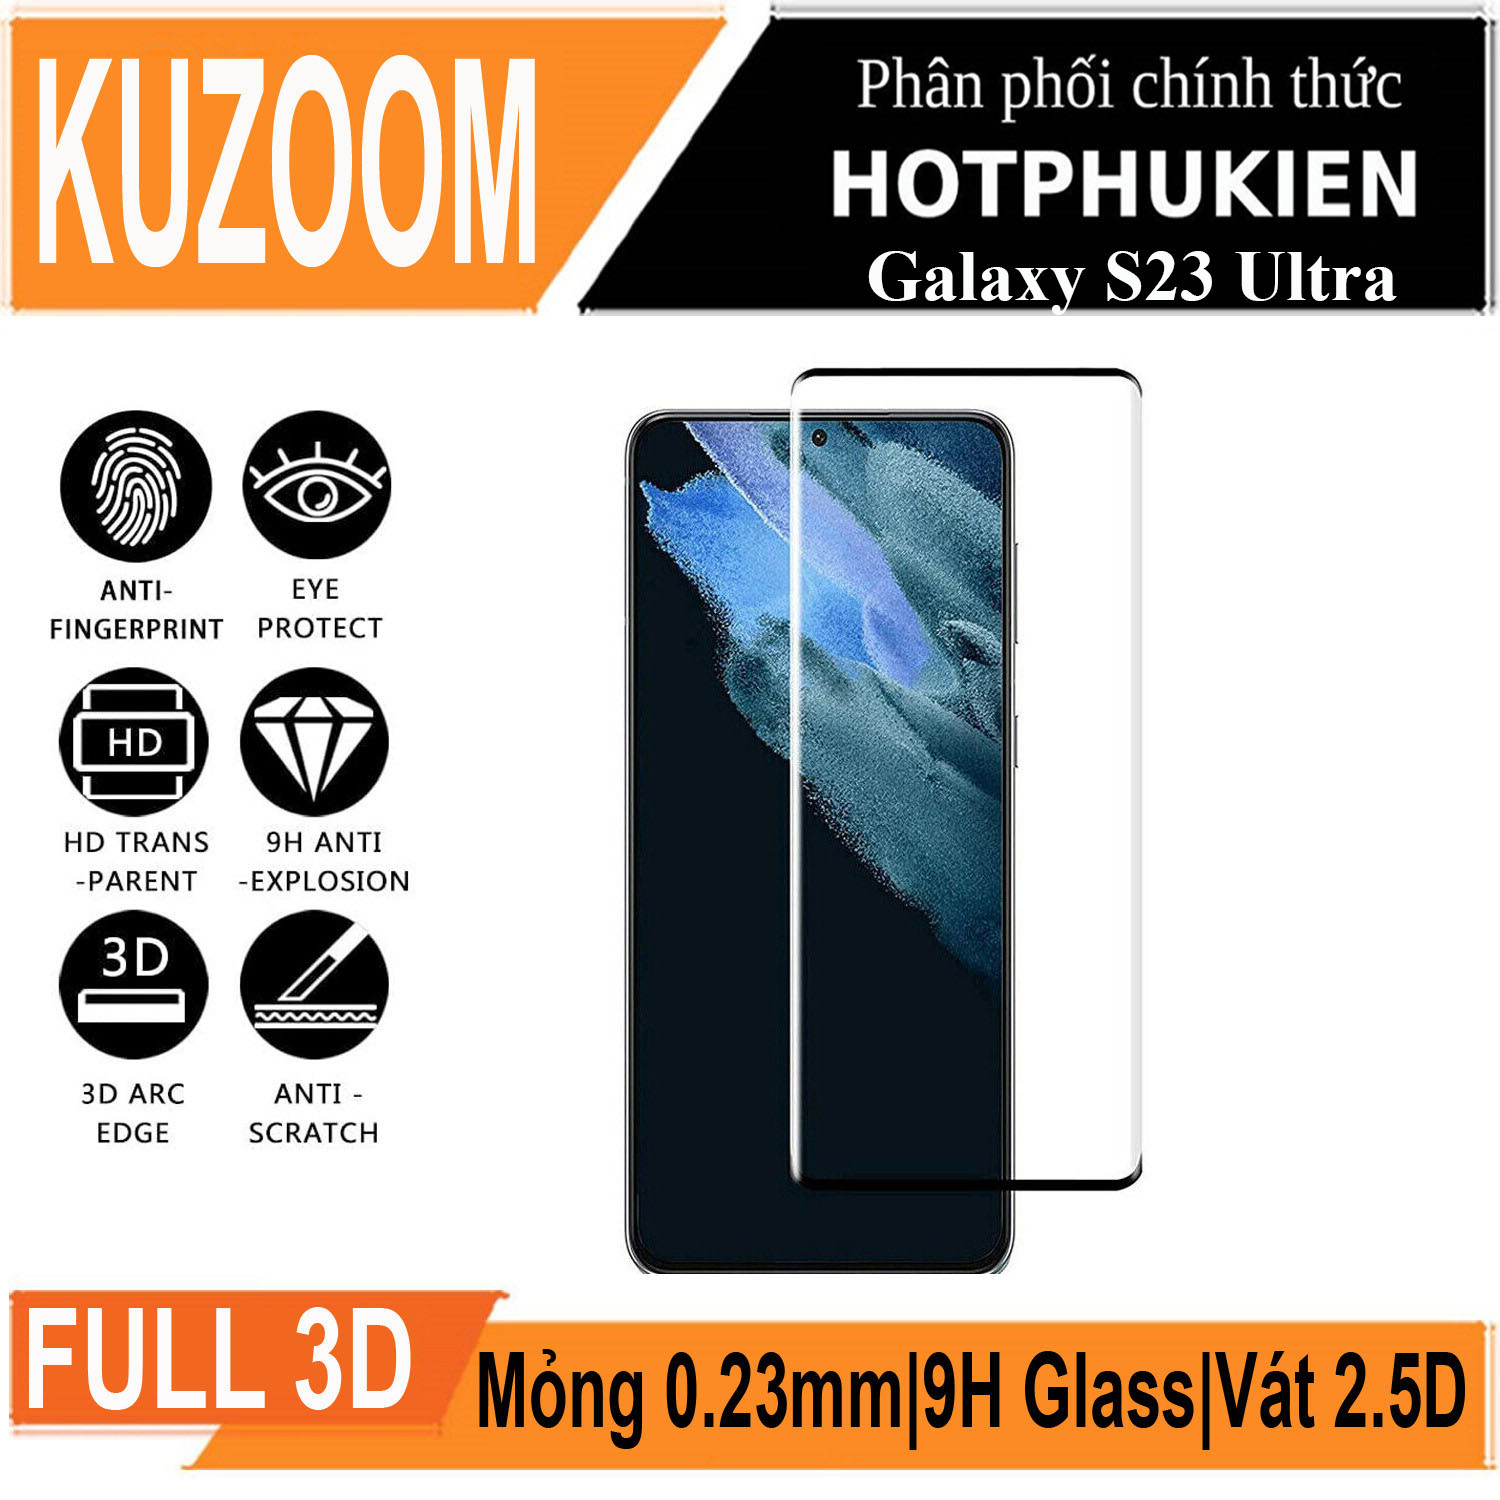 Miếng dán kính cường lực 3D cho Samsung Galaxy S23 Ultra hiệu Kuzoom Protective Glass - mỏng 0.3mm, vát cạnh 2.5D, độ cứng 9H, viền cứng mỏng